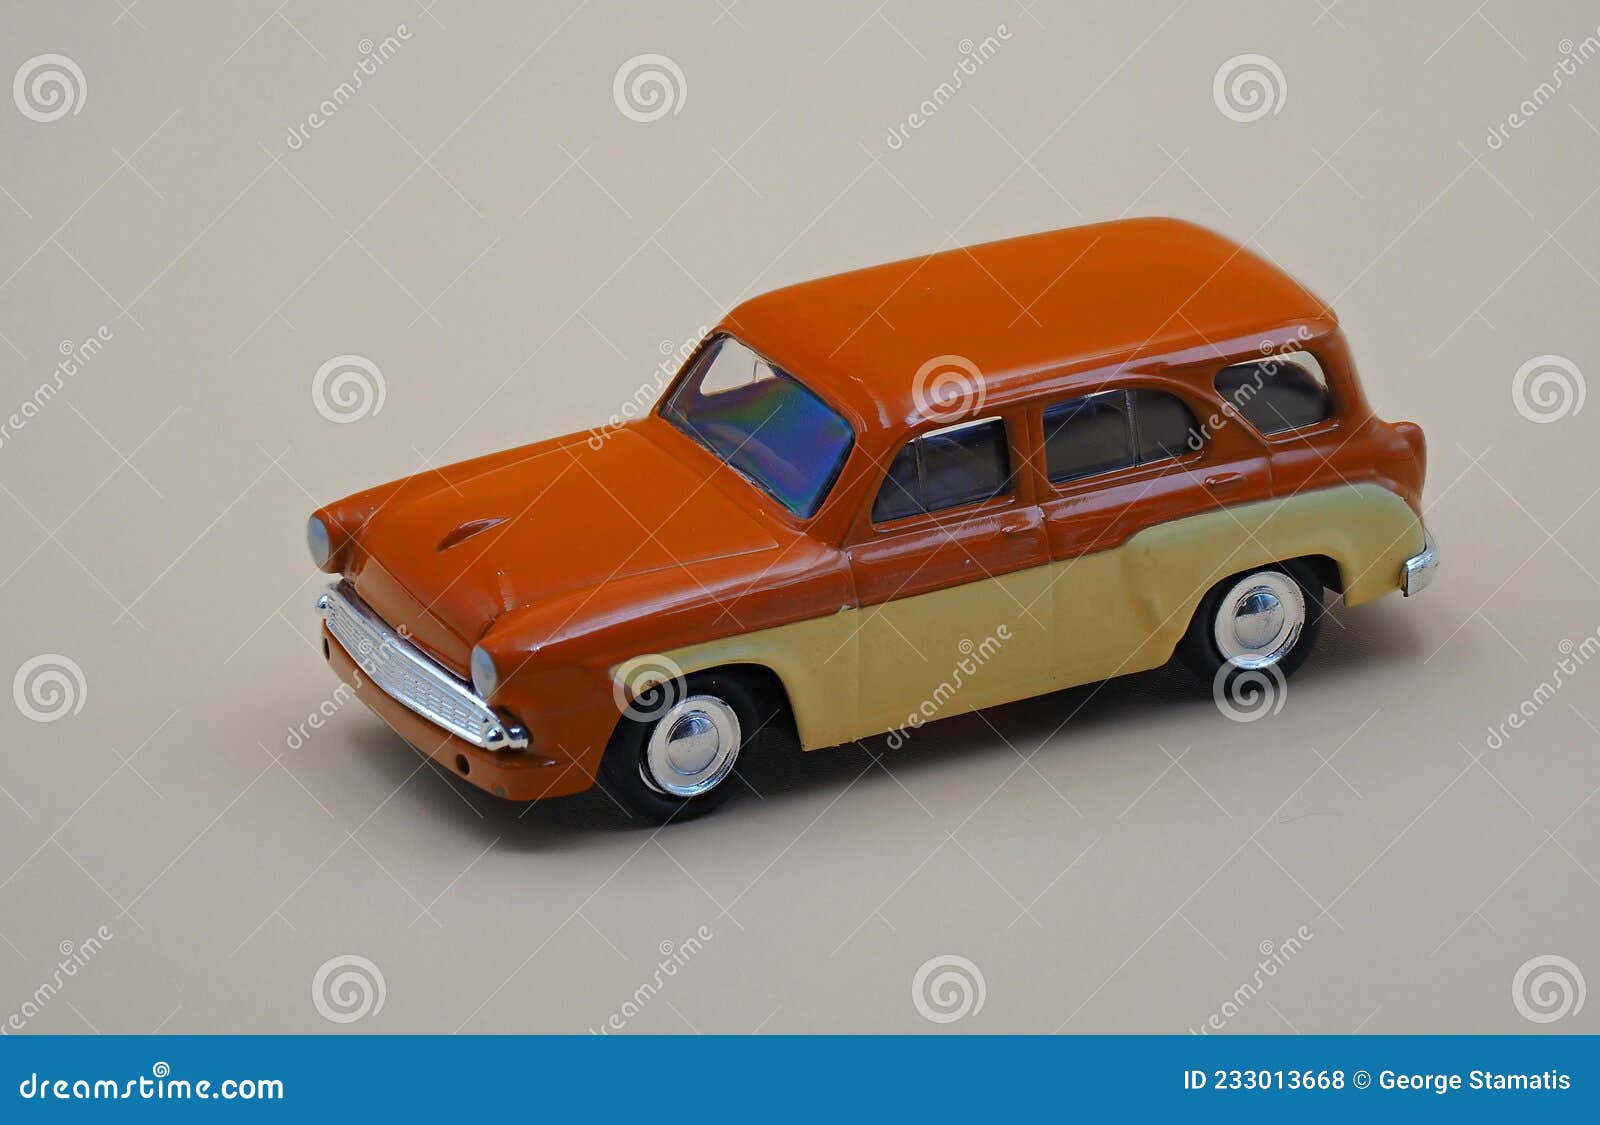 USSR plastic toy cars for children old Vintage Soviet 